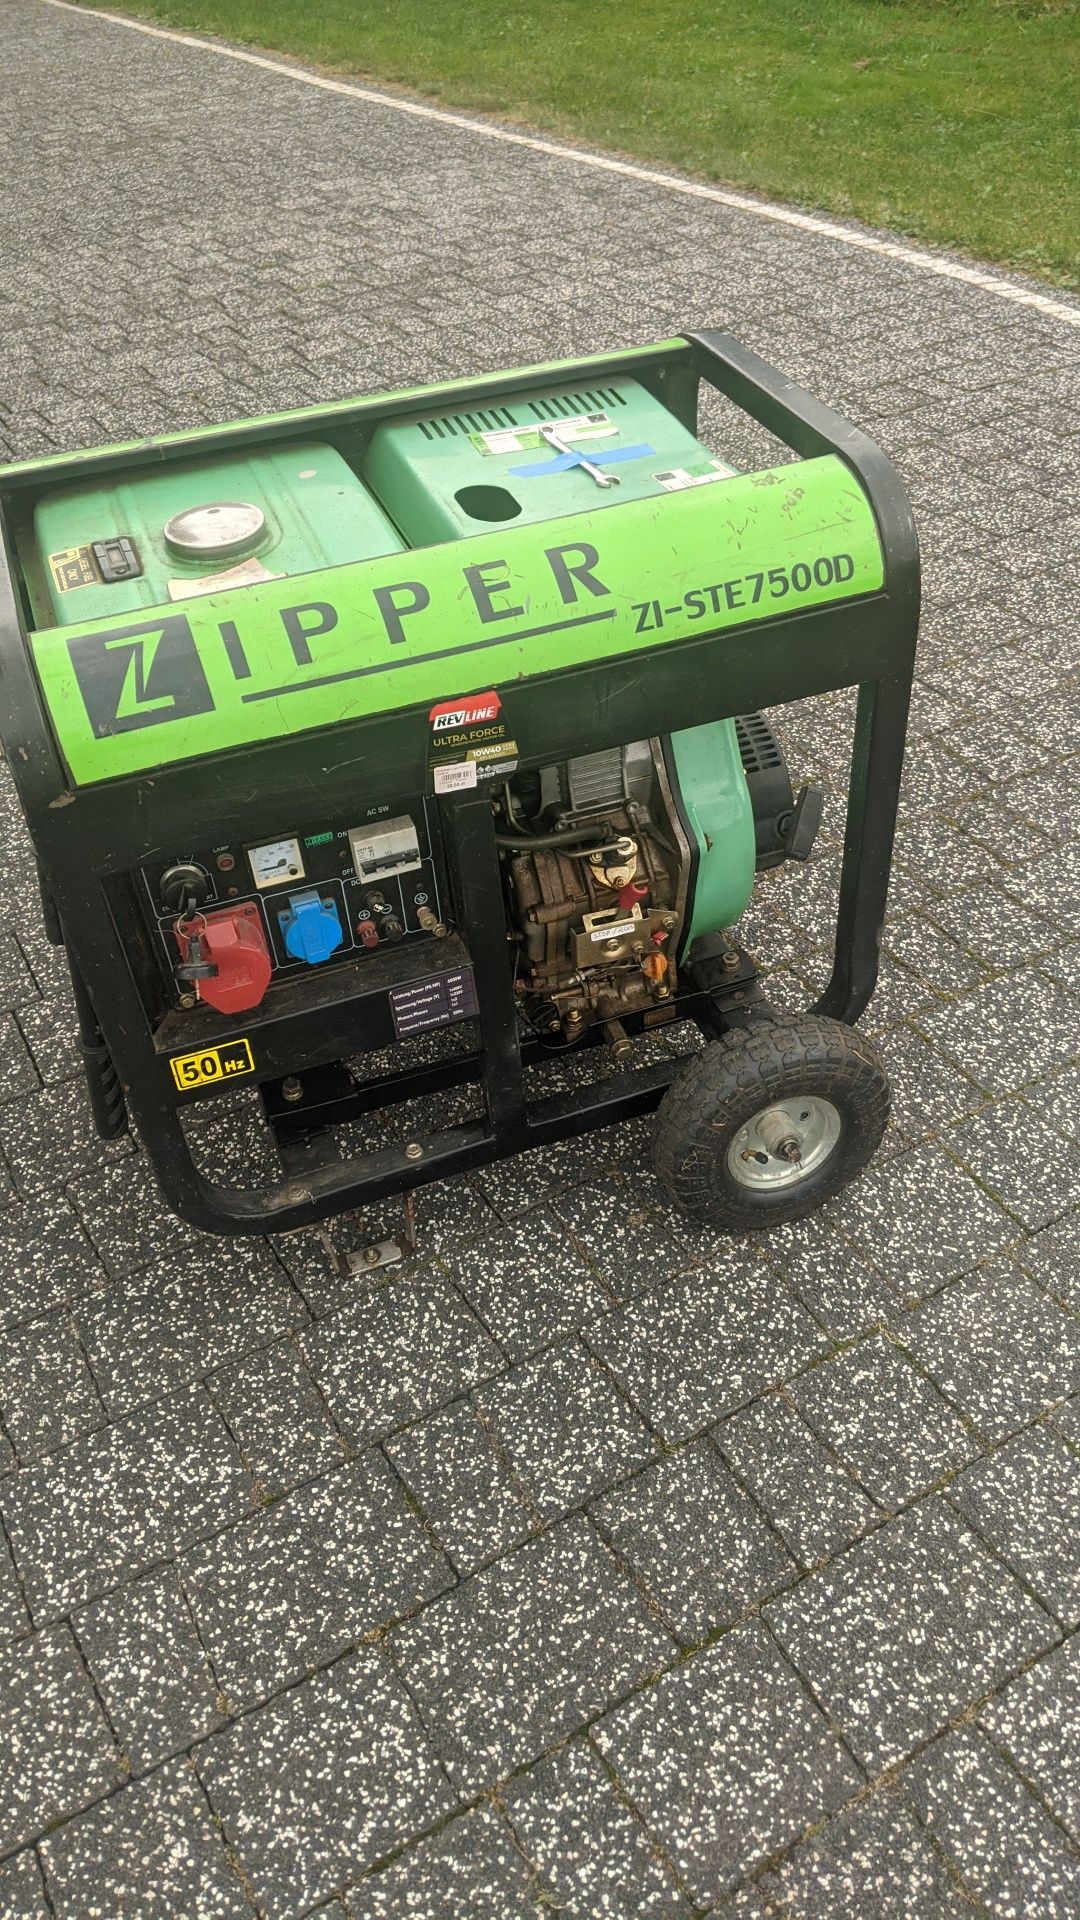 AGREGAT prądotwórczy ZIPPER